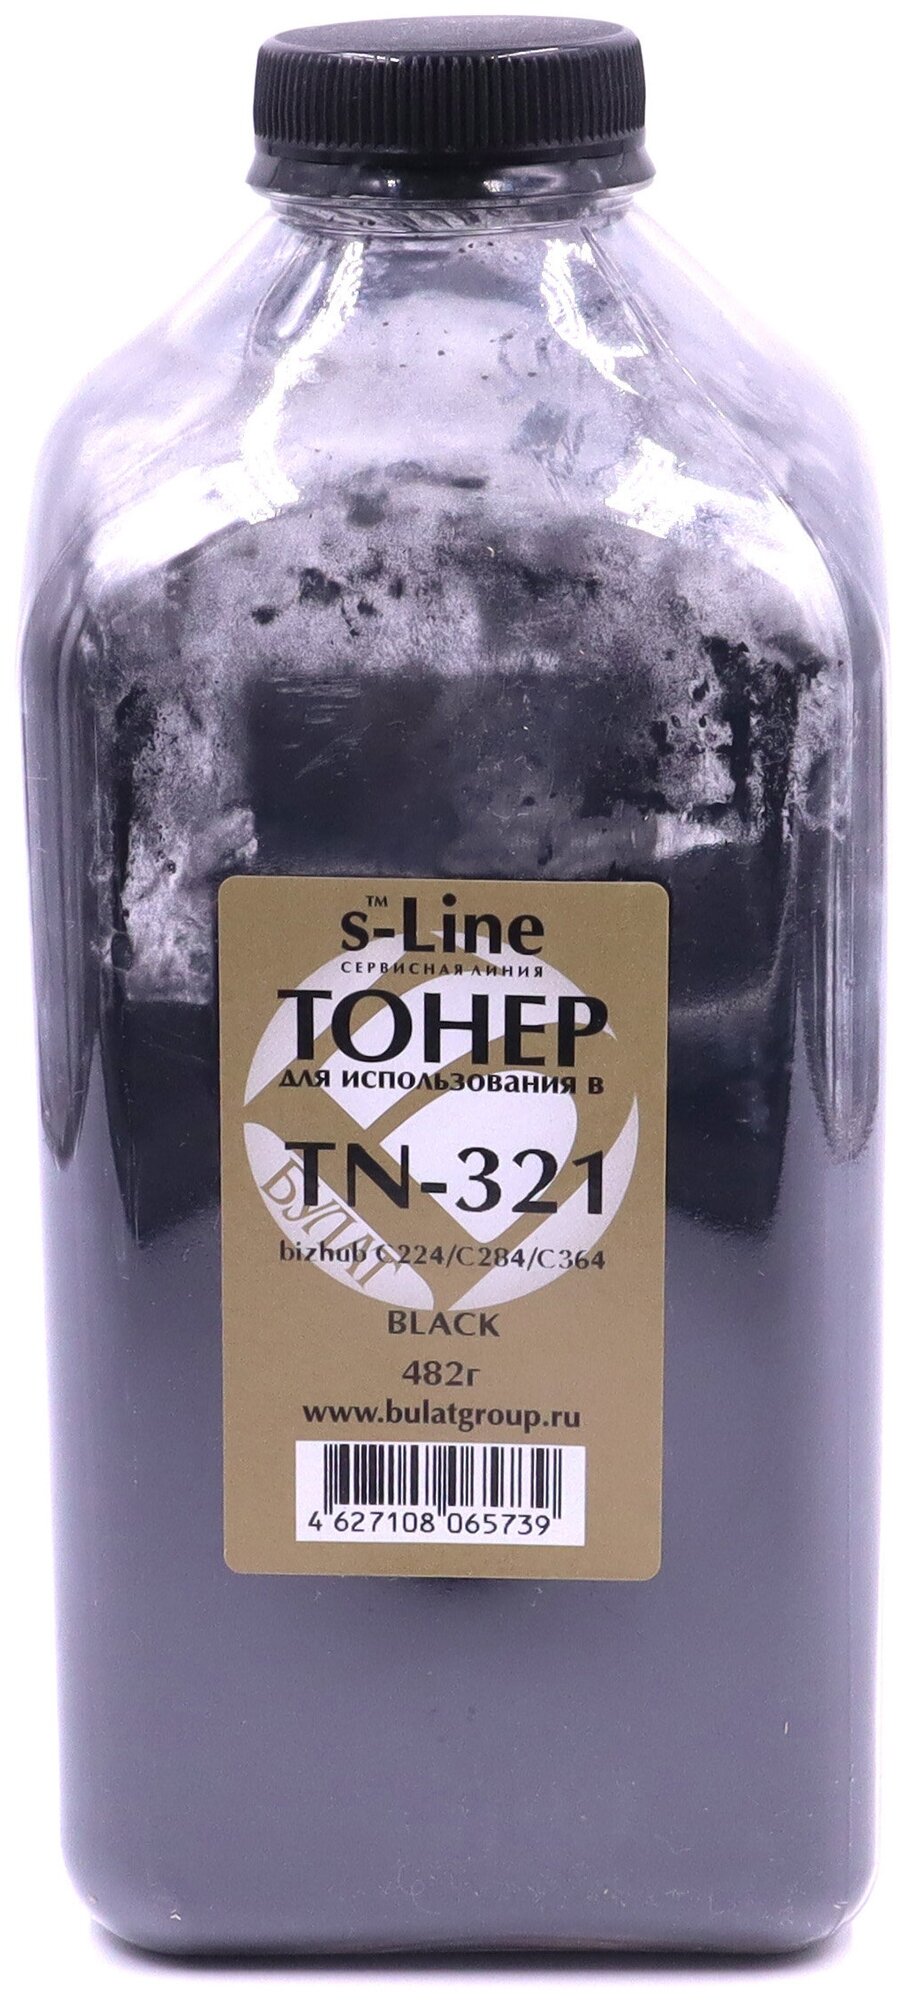 Тонер с девелопером булат s-Line TN-321K для Konica Minolta bizhub C224, C284, C364e (Чёрный, банка 482 г)